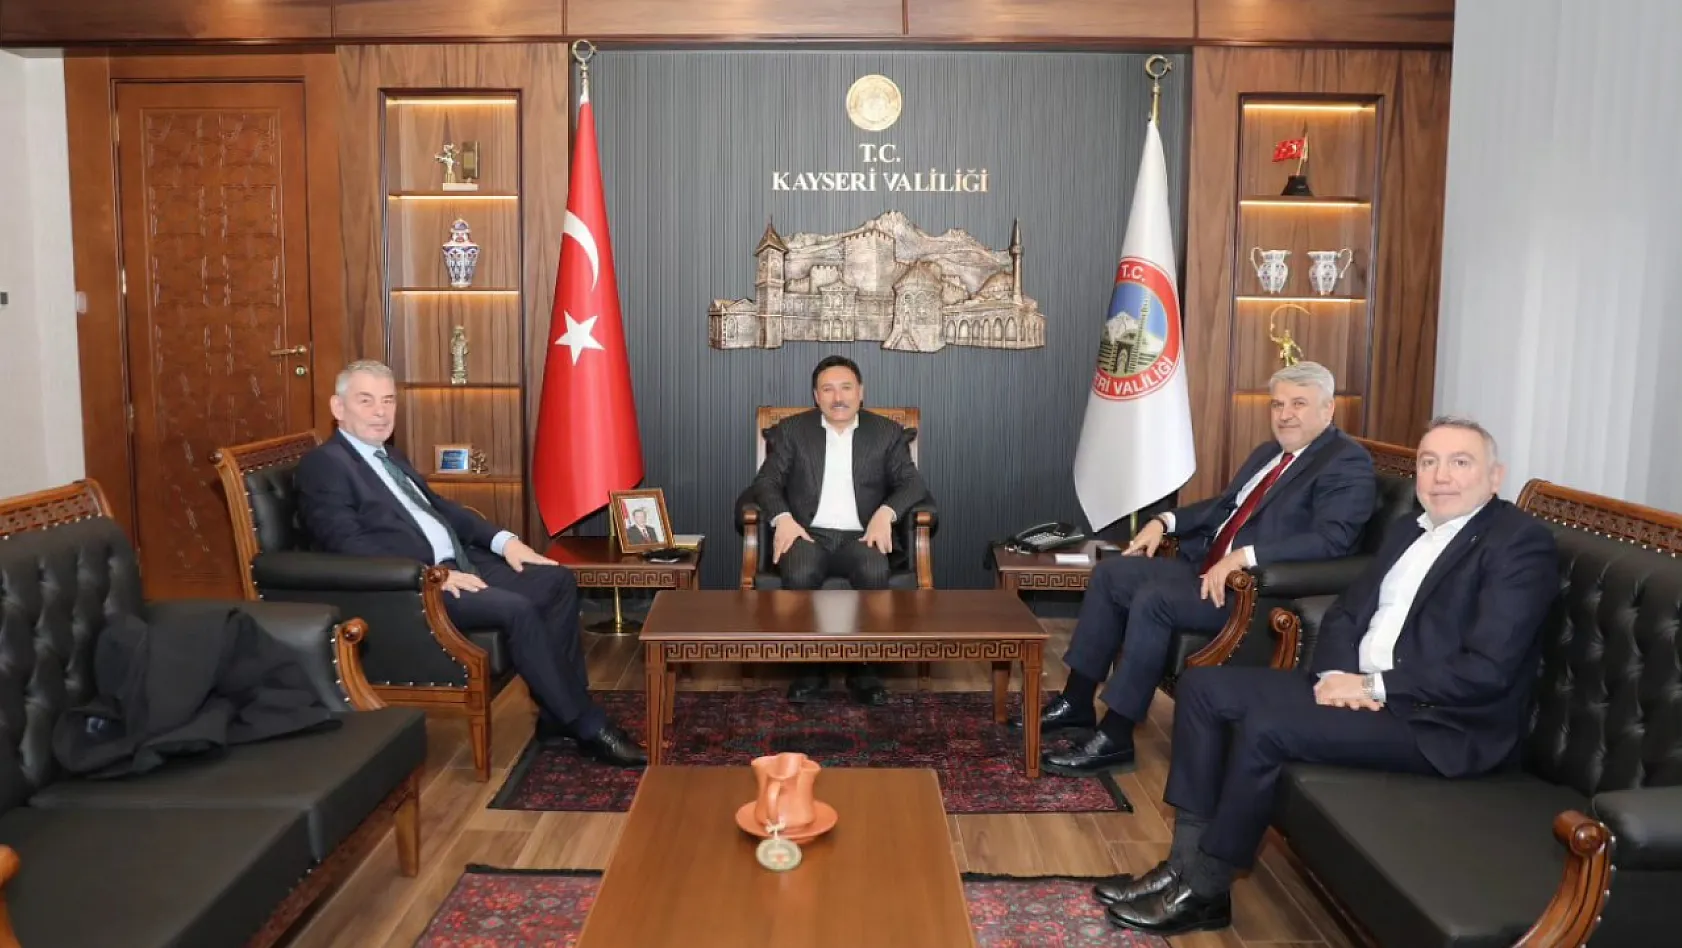 Erciyes Anadolu Holding'in patronu Kayseri'ye geldi